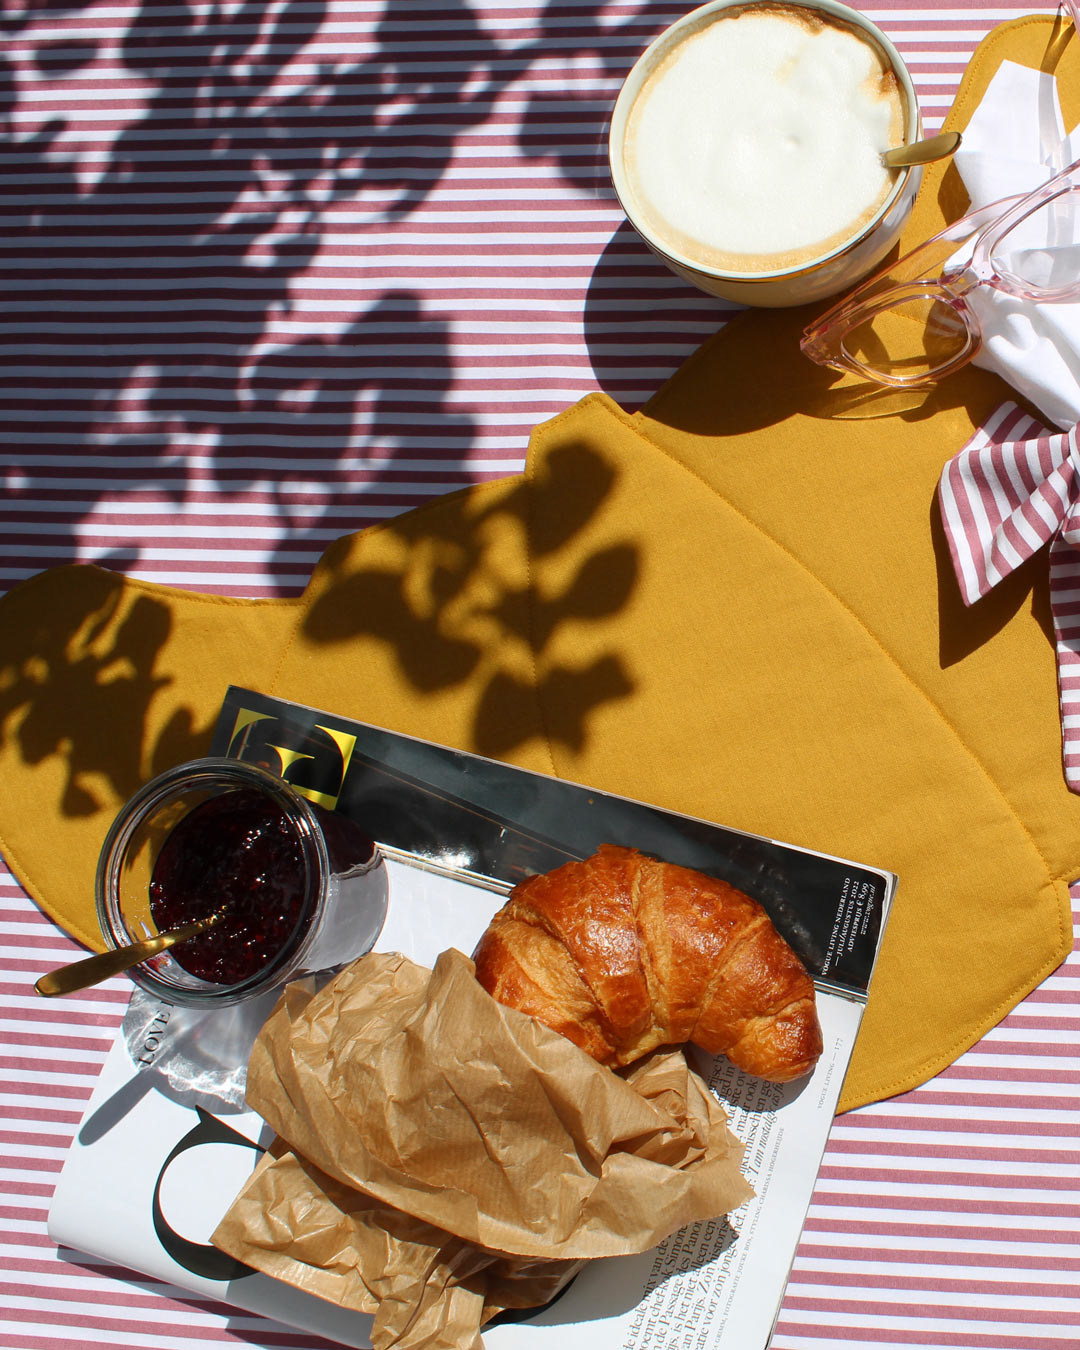 Croissant - Handmade placemat - L'amour des bon bons